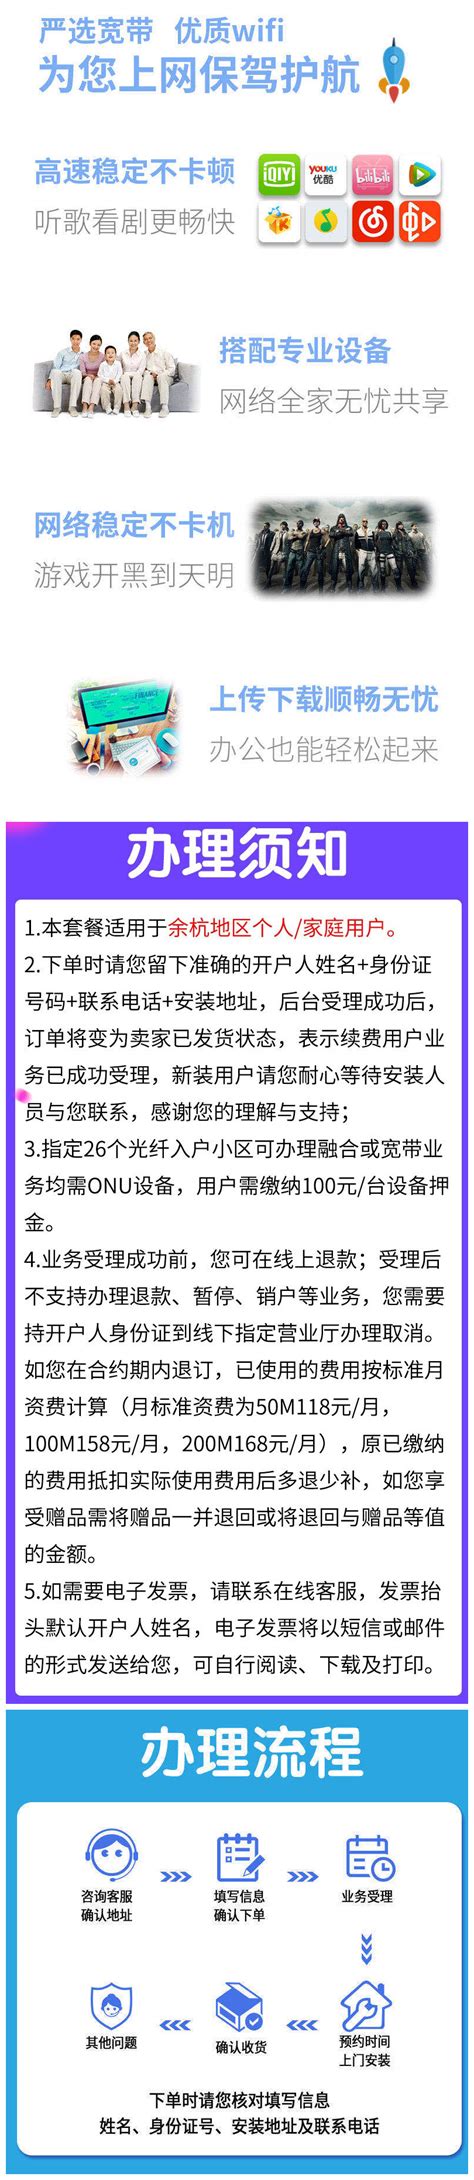 [图解]杭州市余杭区人民政府办公室关于调整余杭区房屋重置价格的通知